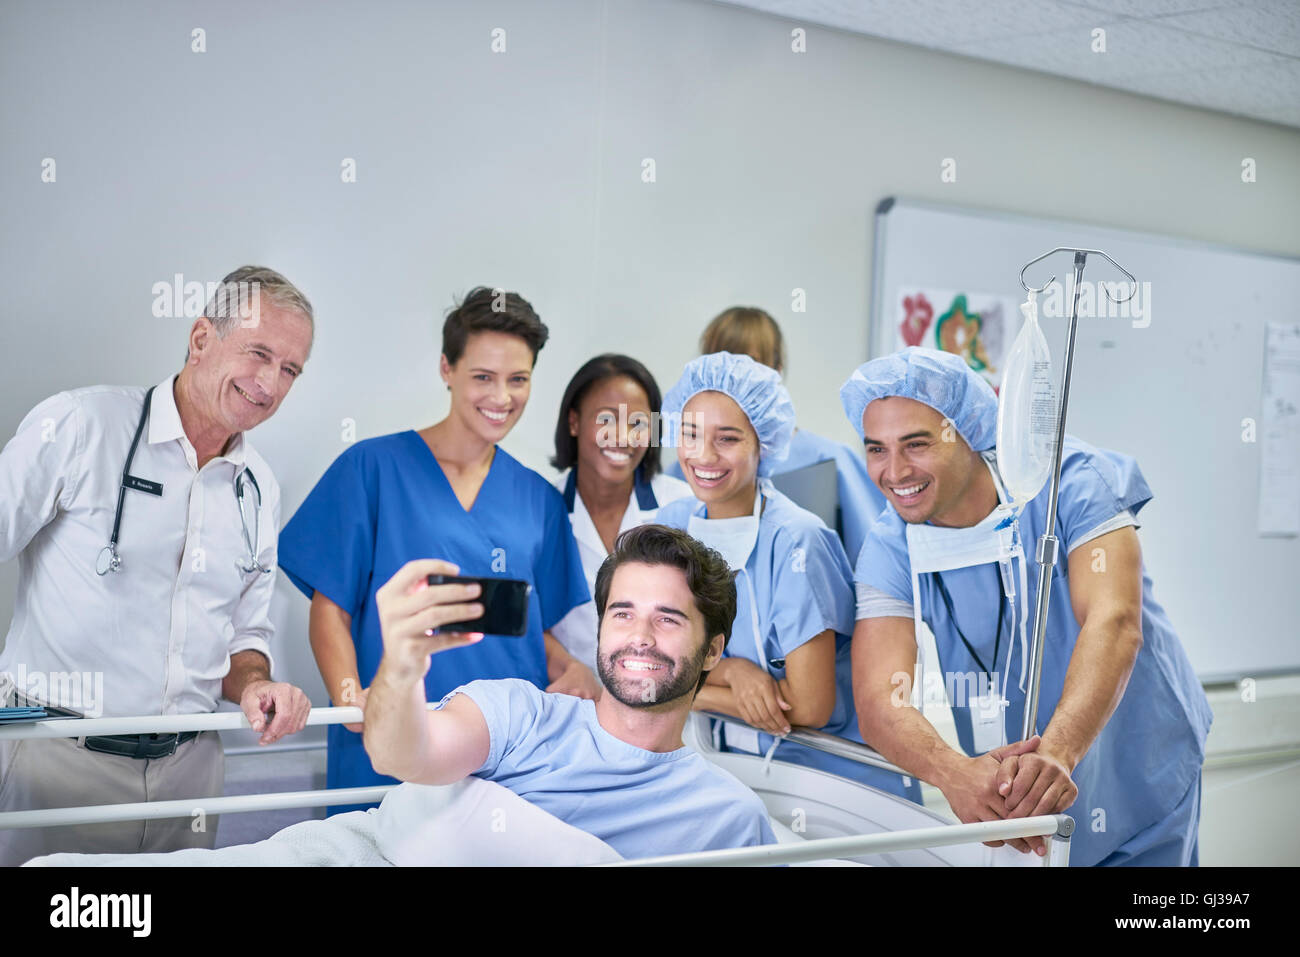 Patienten im Krankenhausbett nehmen Selfie mit Ärzten und Krankenschwestern Stockfoto